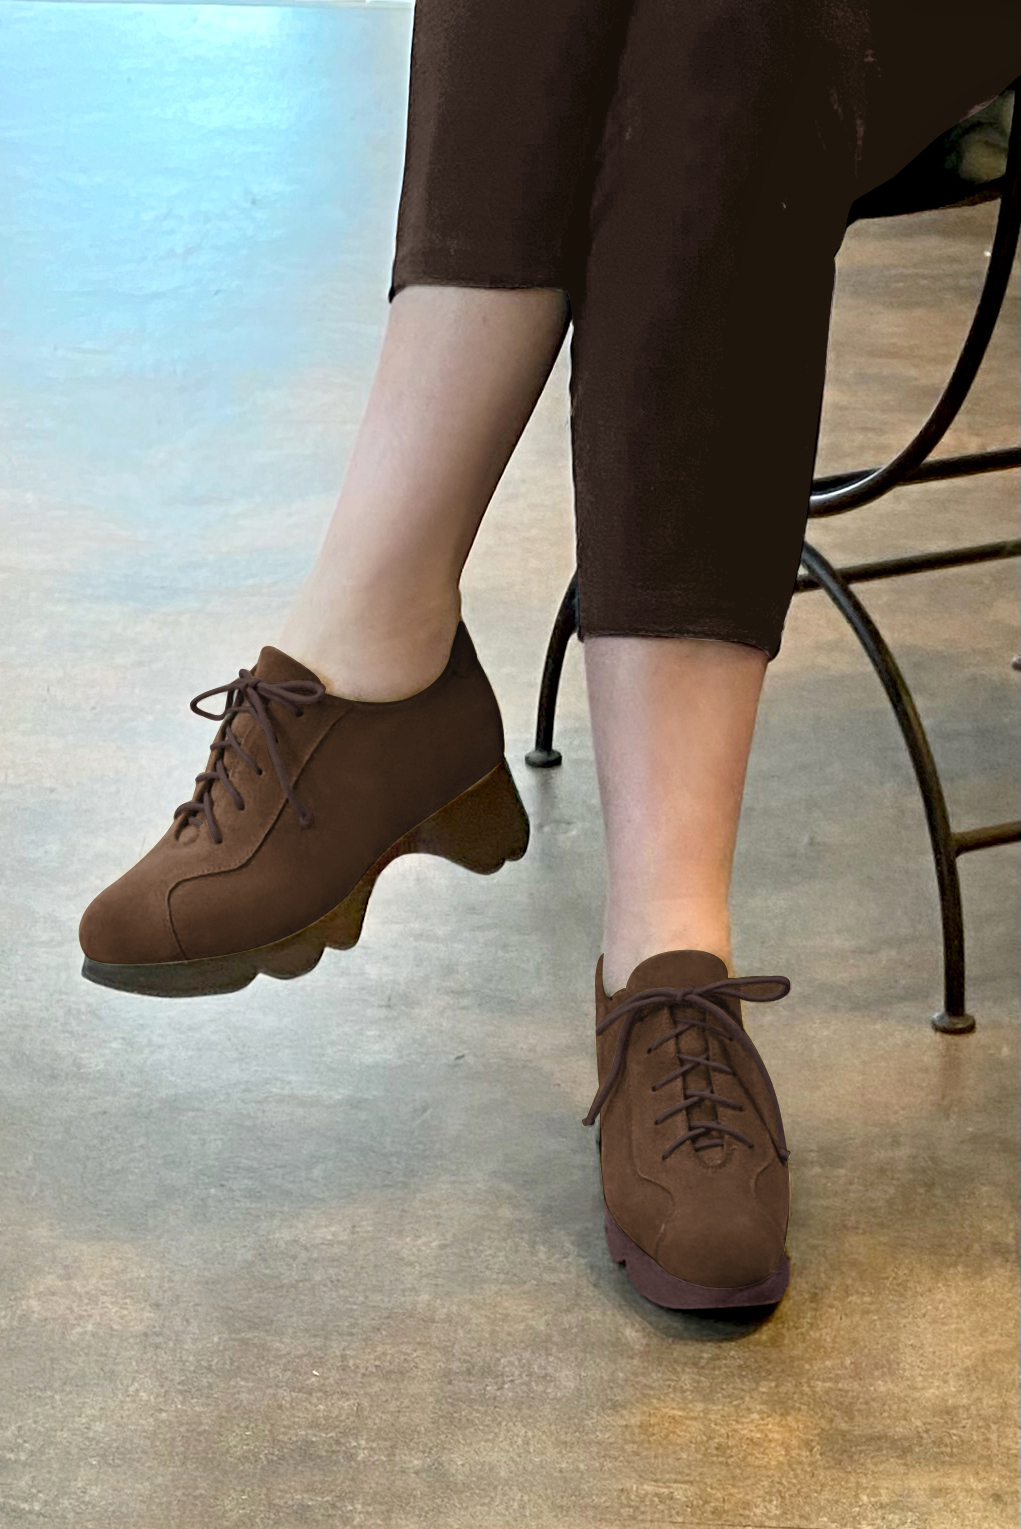 Chaussure femme à lacets : Derby sport couleur marron chocolat.. Vue porté - Florence KOOIJMAN